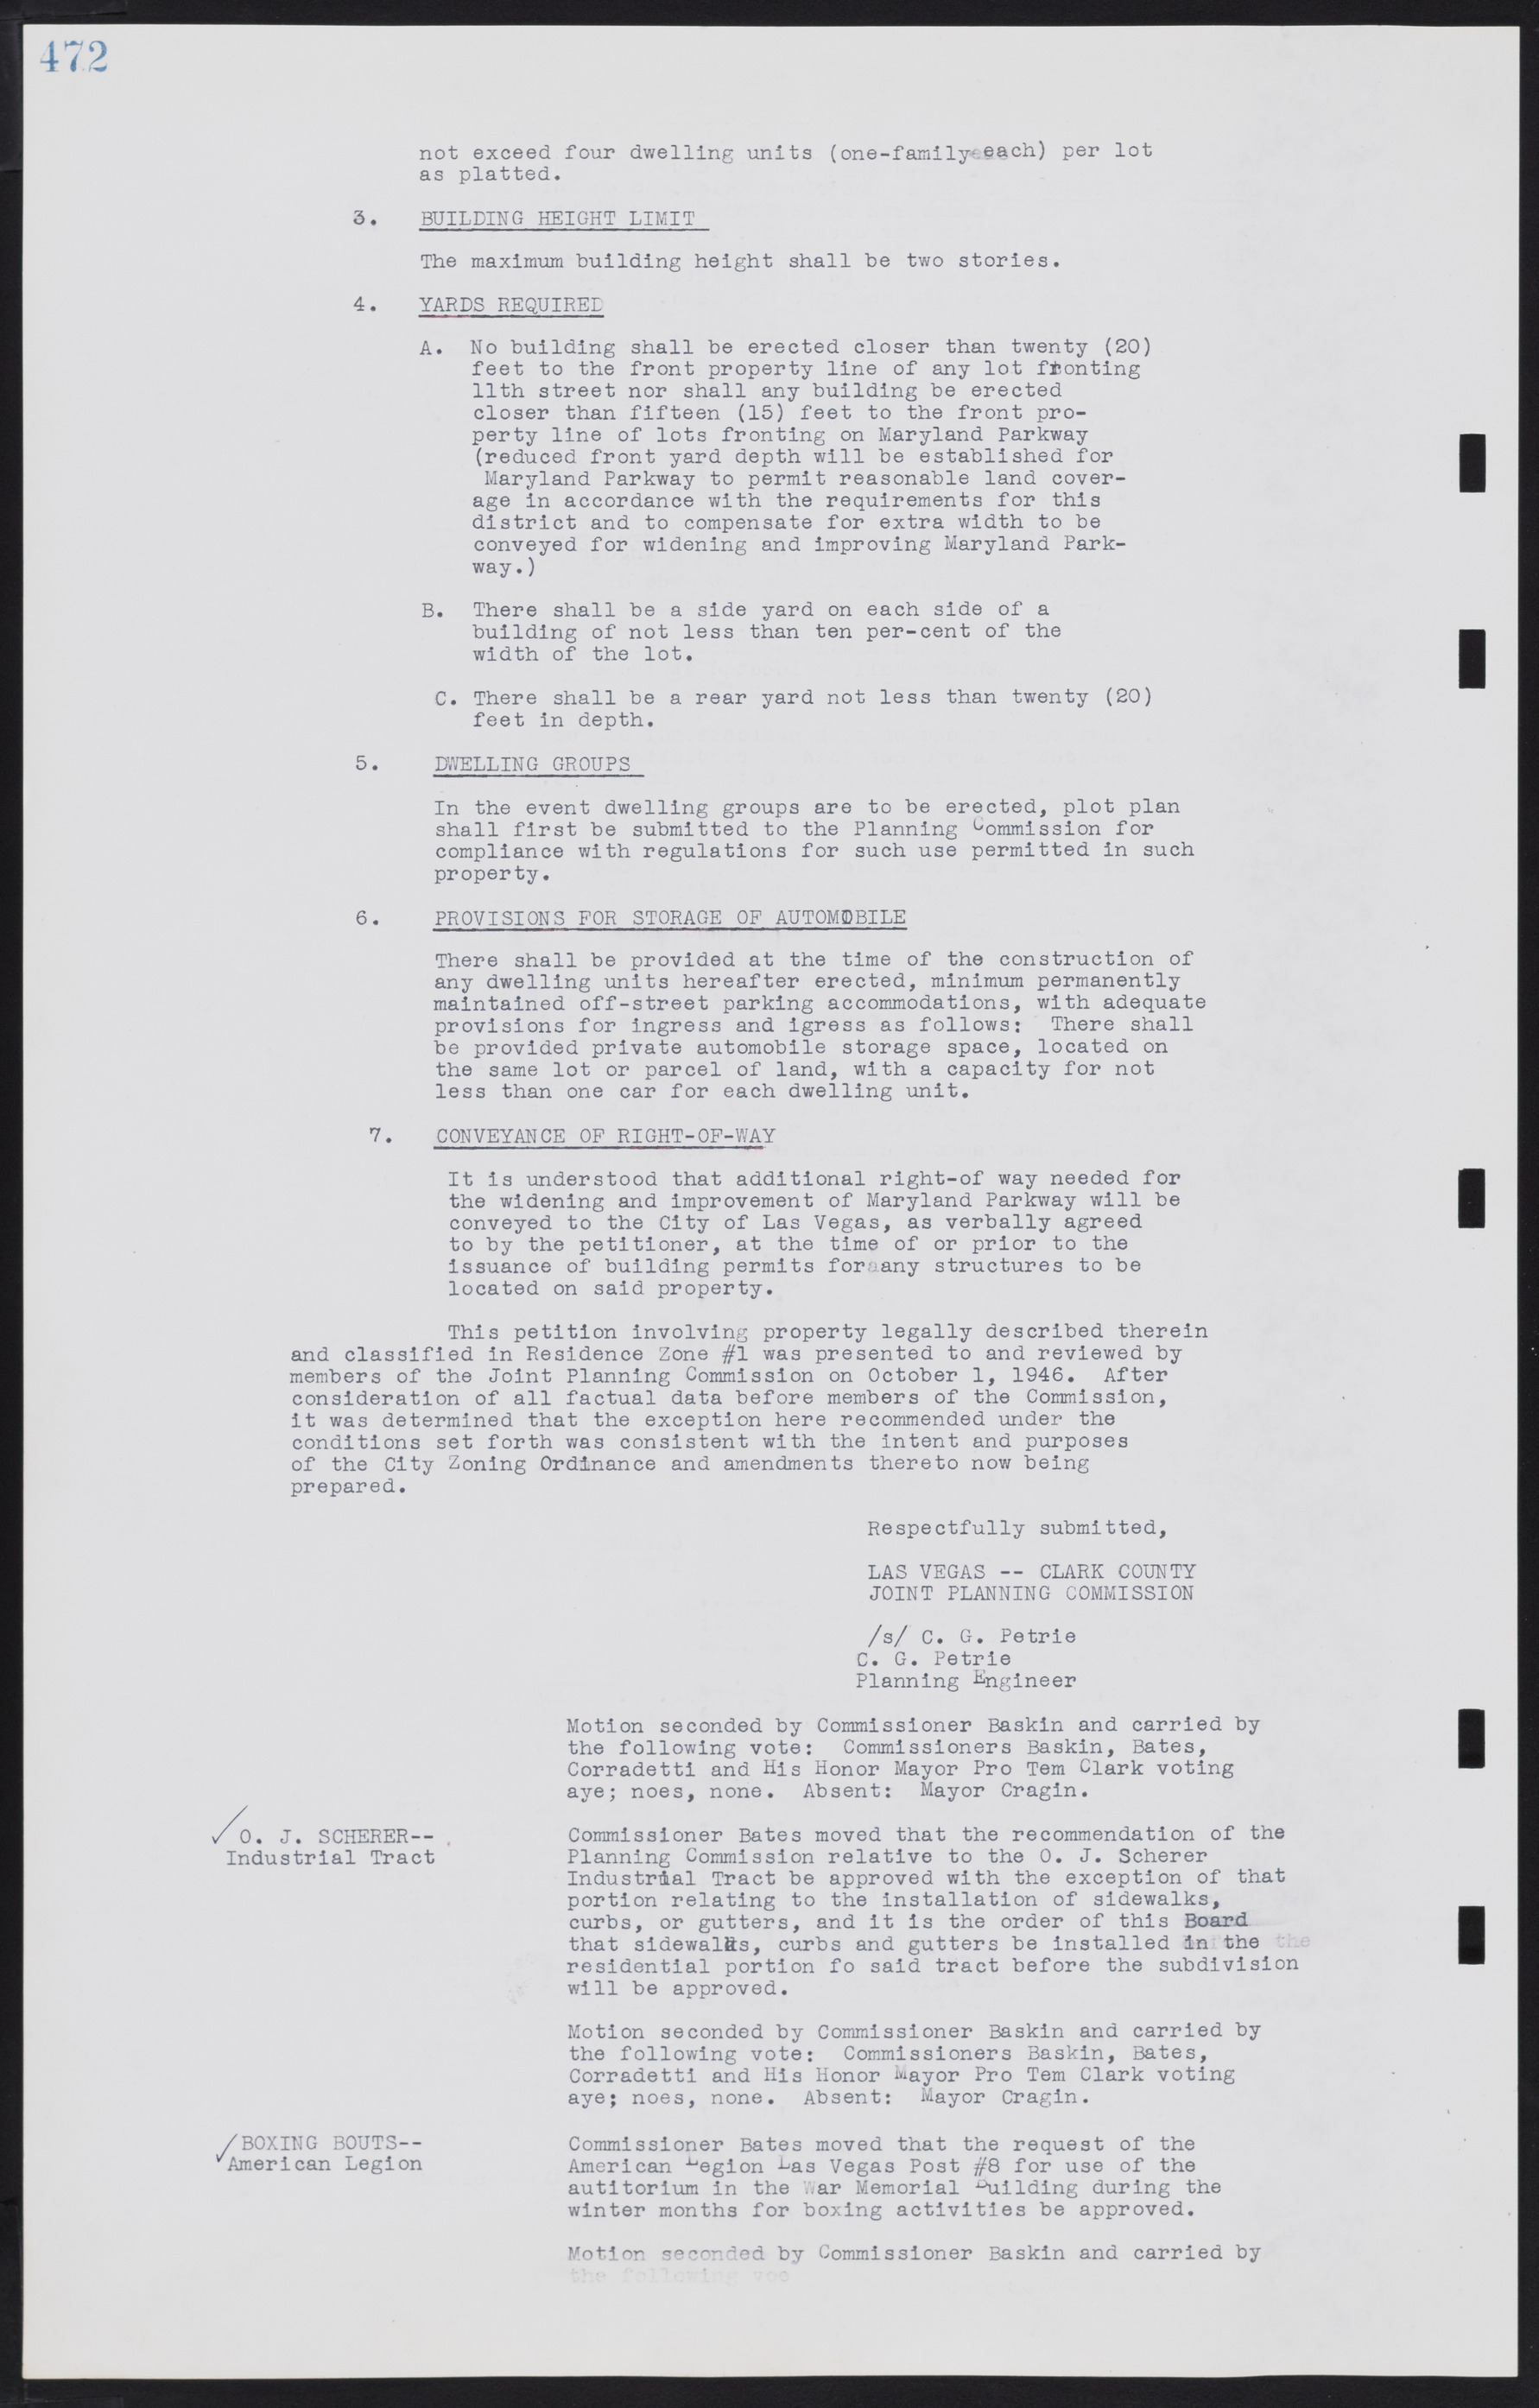 Las Vegas City Commission Minutes, August 11, 1942 to December 30, 1946, lvc000005-503